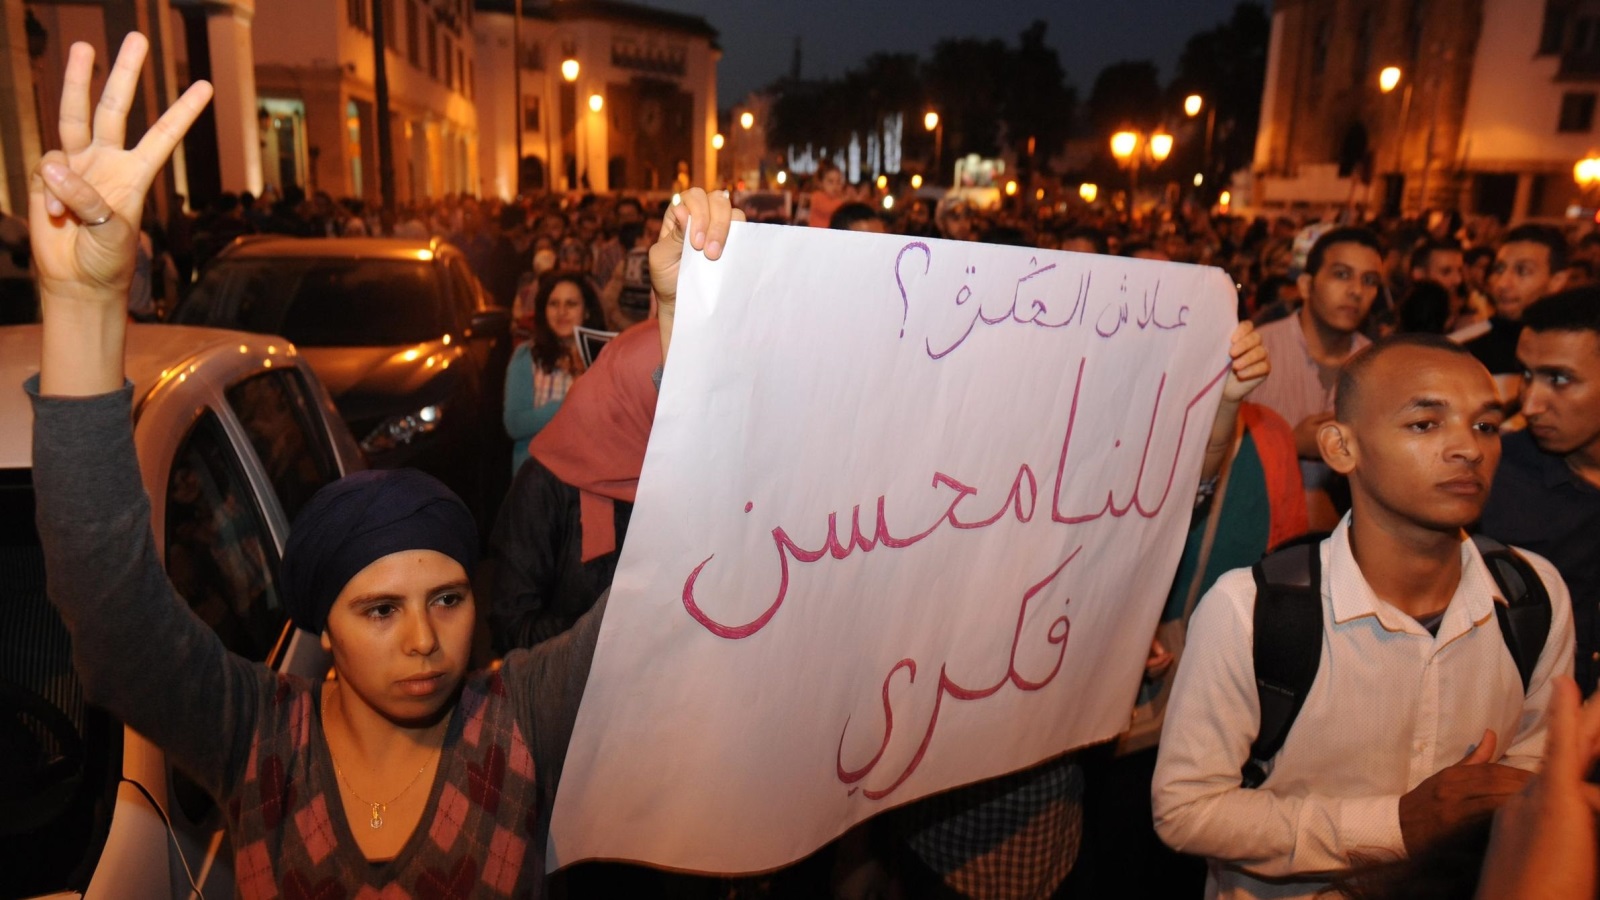 ‪مقتل فكري أعاد للواجهة قدرة الشارع المغربي على التحرك في وجه الغبن والتهميش‬ (الأوروبية)